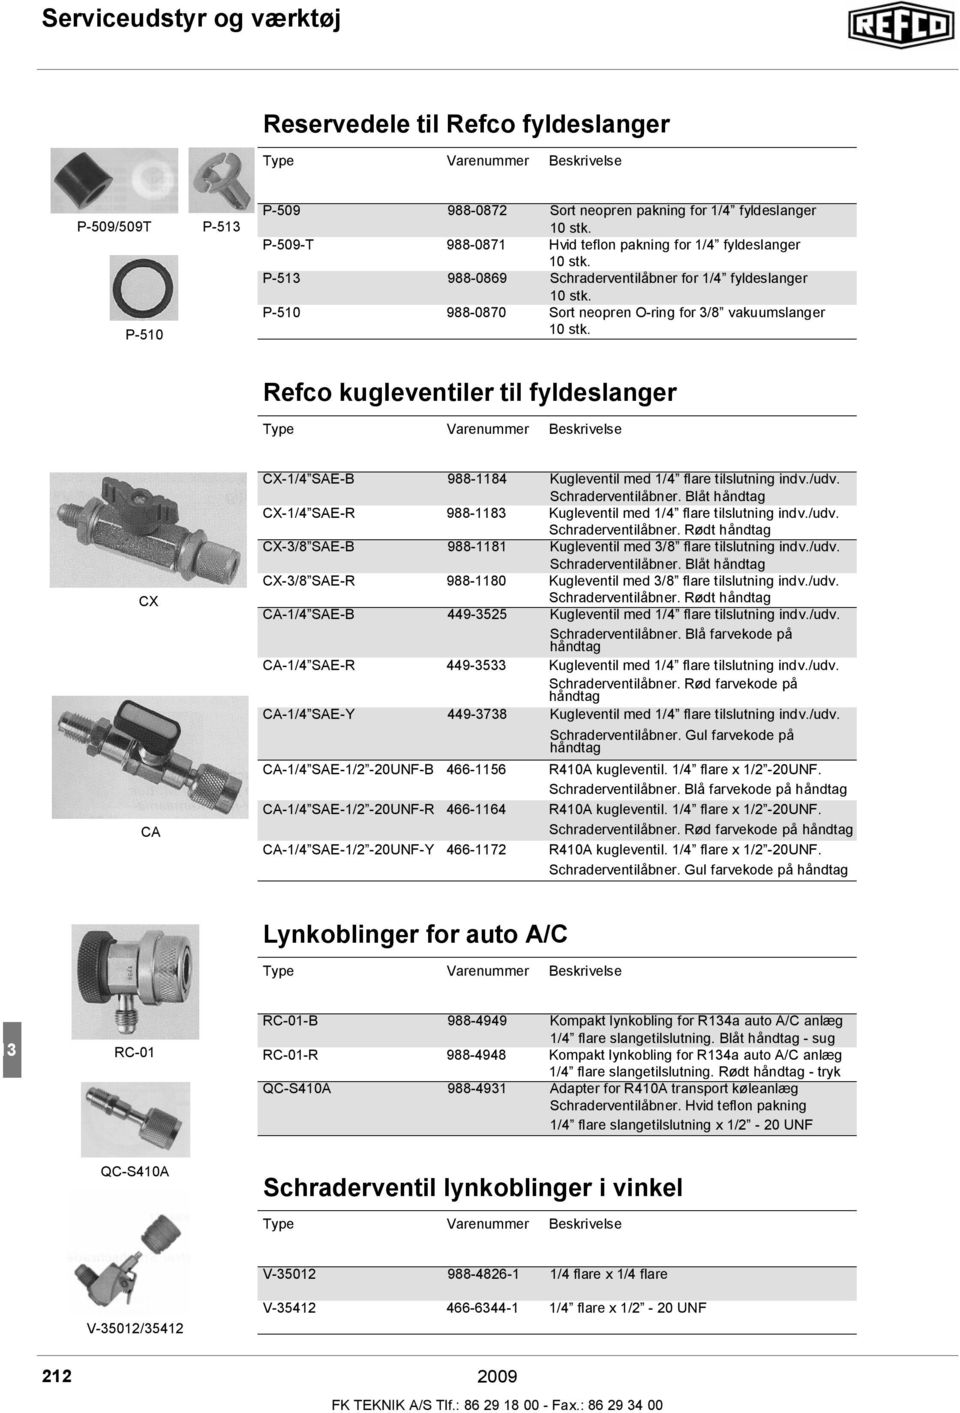 Refco kugleventiler til fyldeslanger CX CA CX-1/4 SAE-B 988-1184 Kugleventil med 1/4 flare tilslutning indv./udv. Schraderventilåbner.